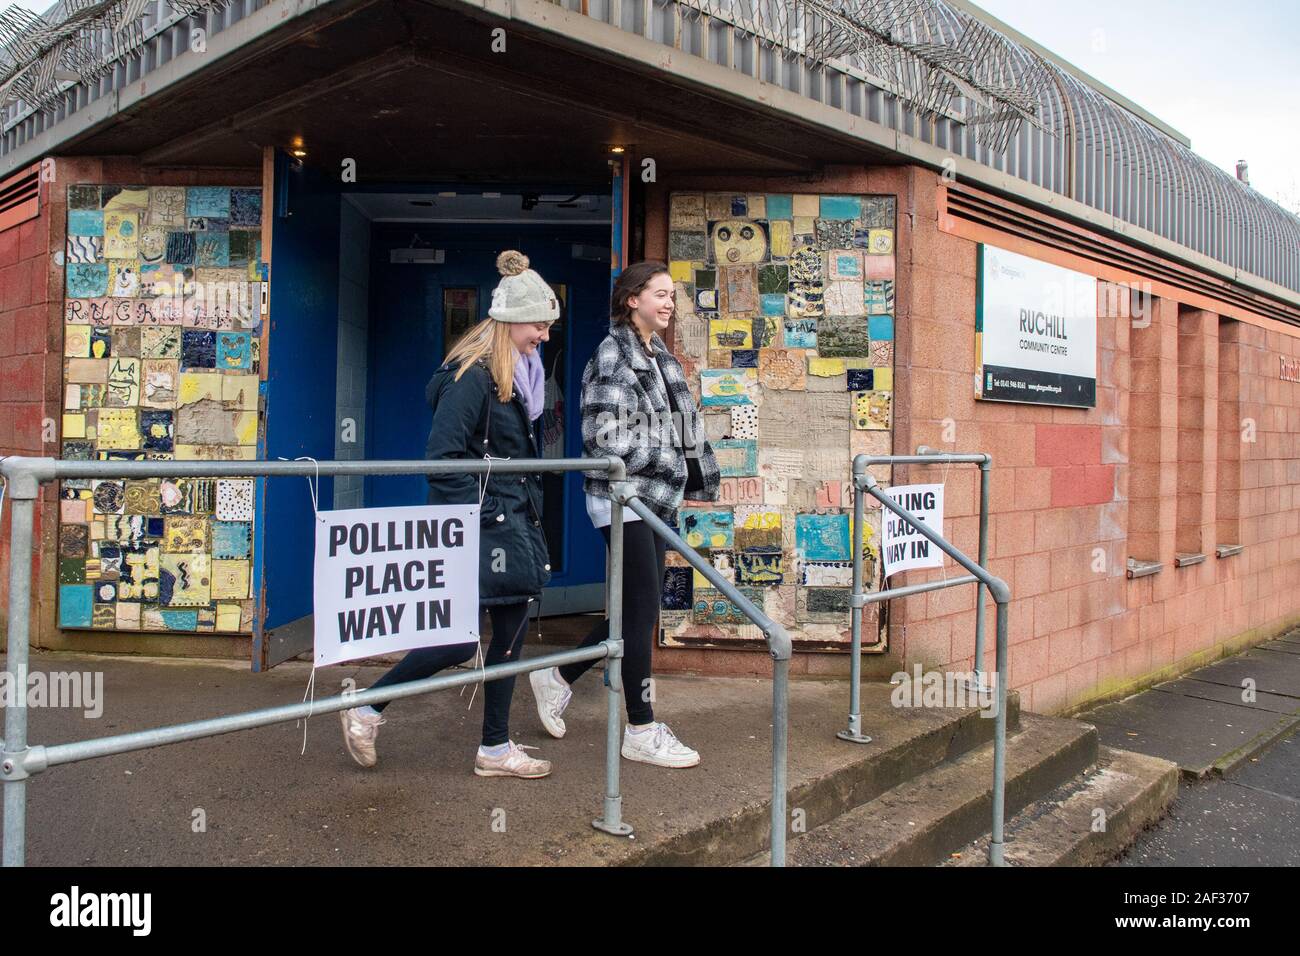 Ruchill, Glasgow, Scotland, UK - 12 décembre 2019 : élections britanniques - les jeunes électeurs de scrutin laissant à Ruchill Centre d'éducation communautaire après le vote dans la circonscription du nord de Glasgow, Ecosse Banque D'Images